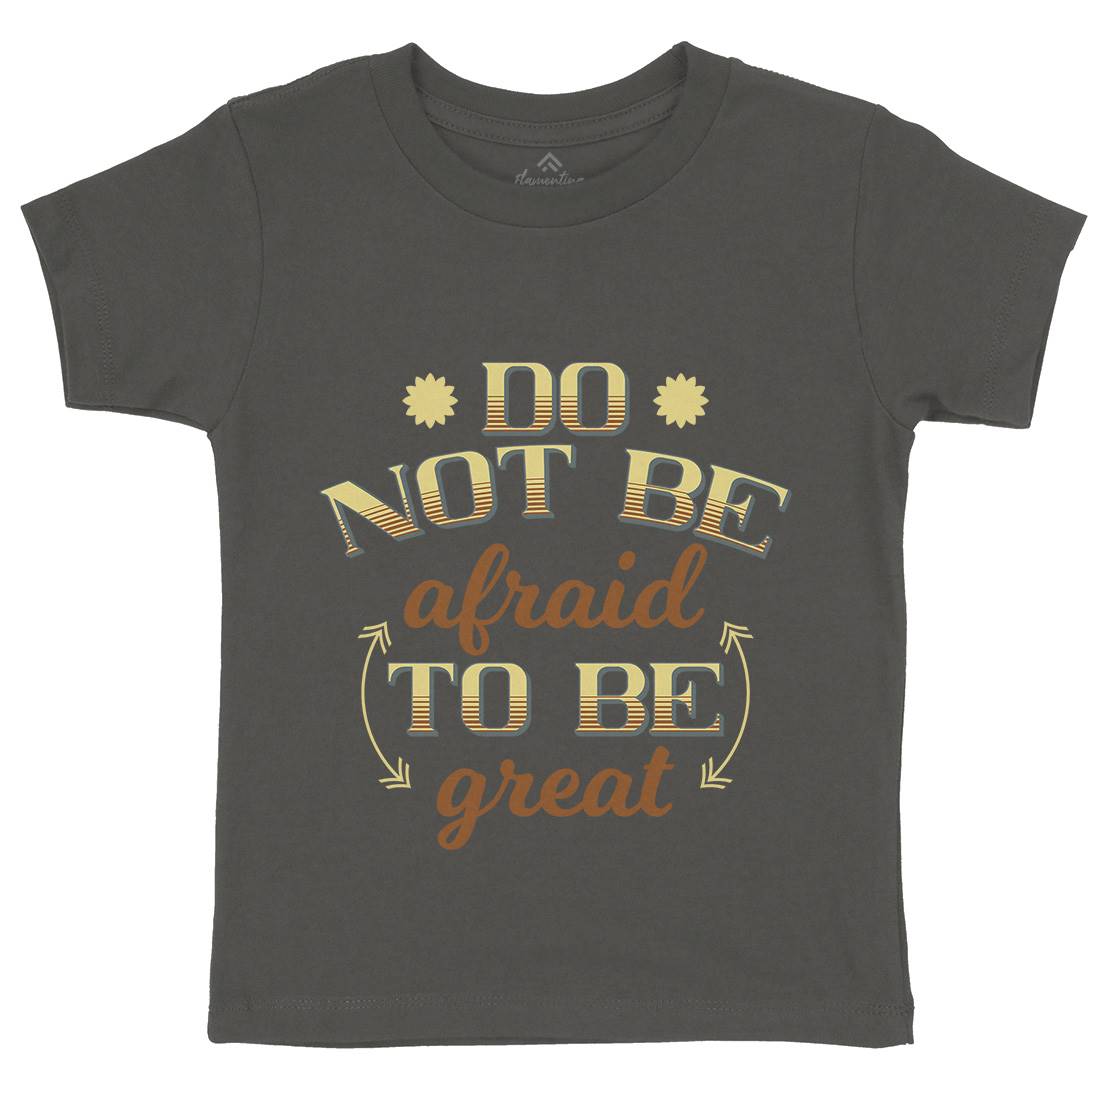 Be Great Kids Organic Crew Neck T-Shirt Retro B278